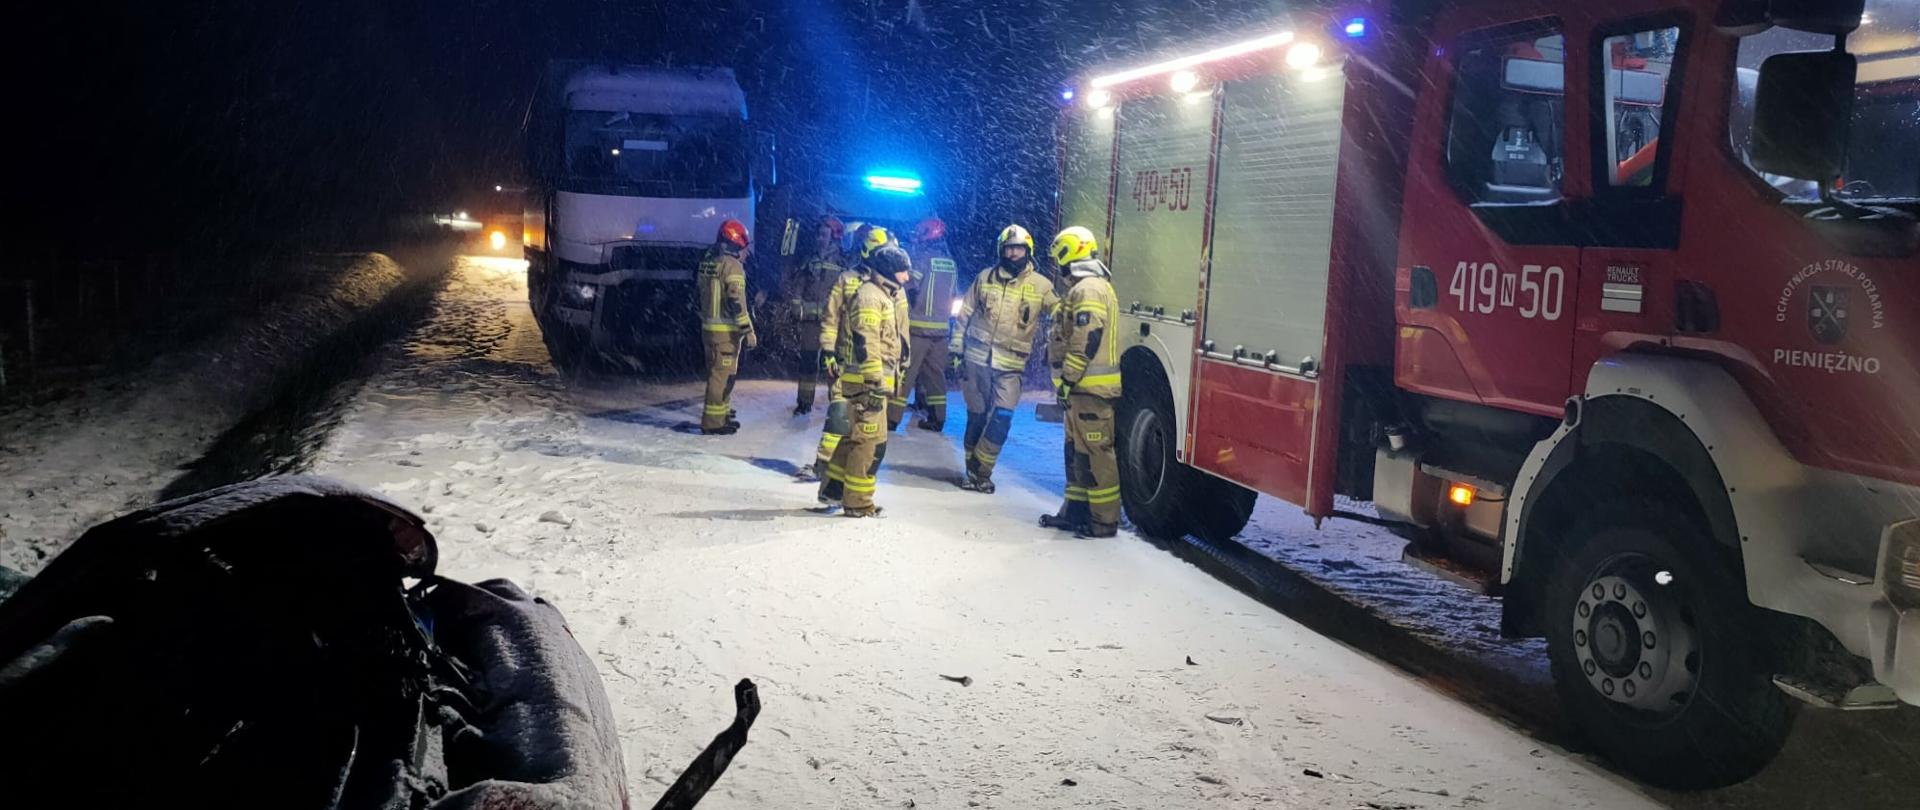 Noc. Na zaśnieżonej drodze z prawej strony stoi duży samochód strażacki. Obok strażacy. Pada śnieg. W dolnym lewym rogu uszkodzone auto w rowie.